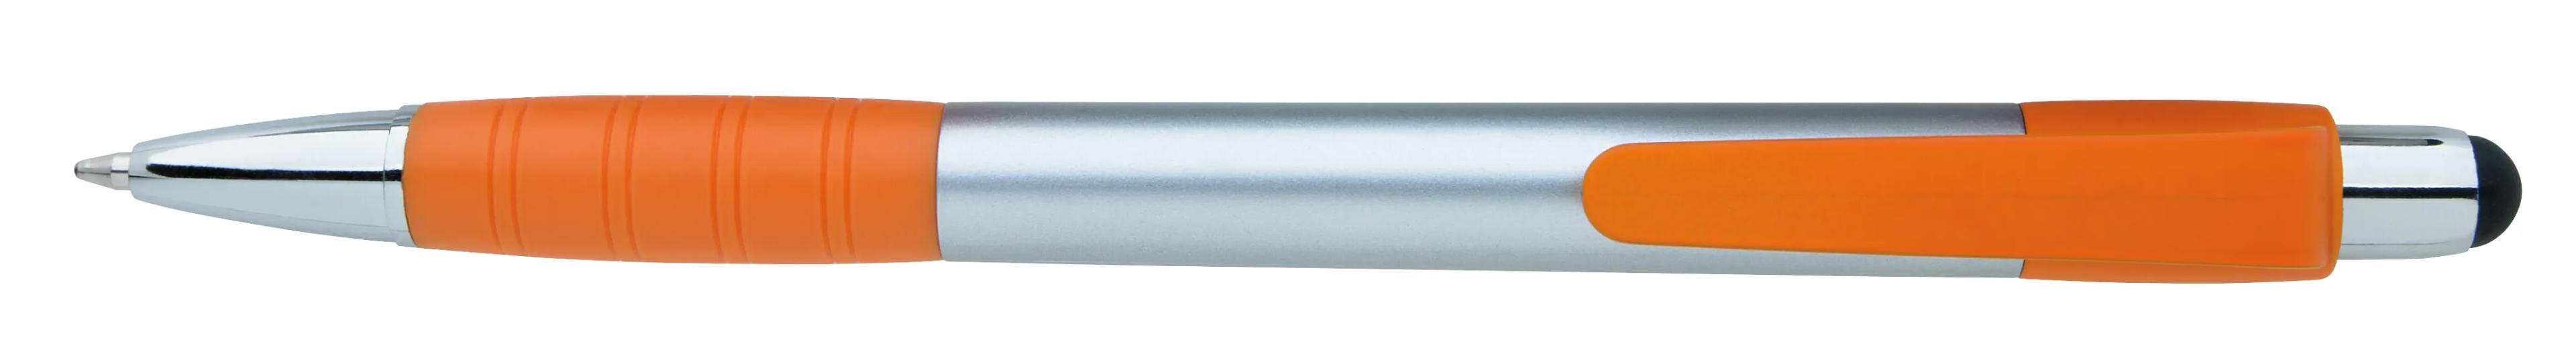 Silver Element Stylus Pen 13 of 53